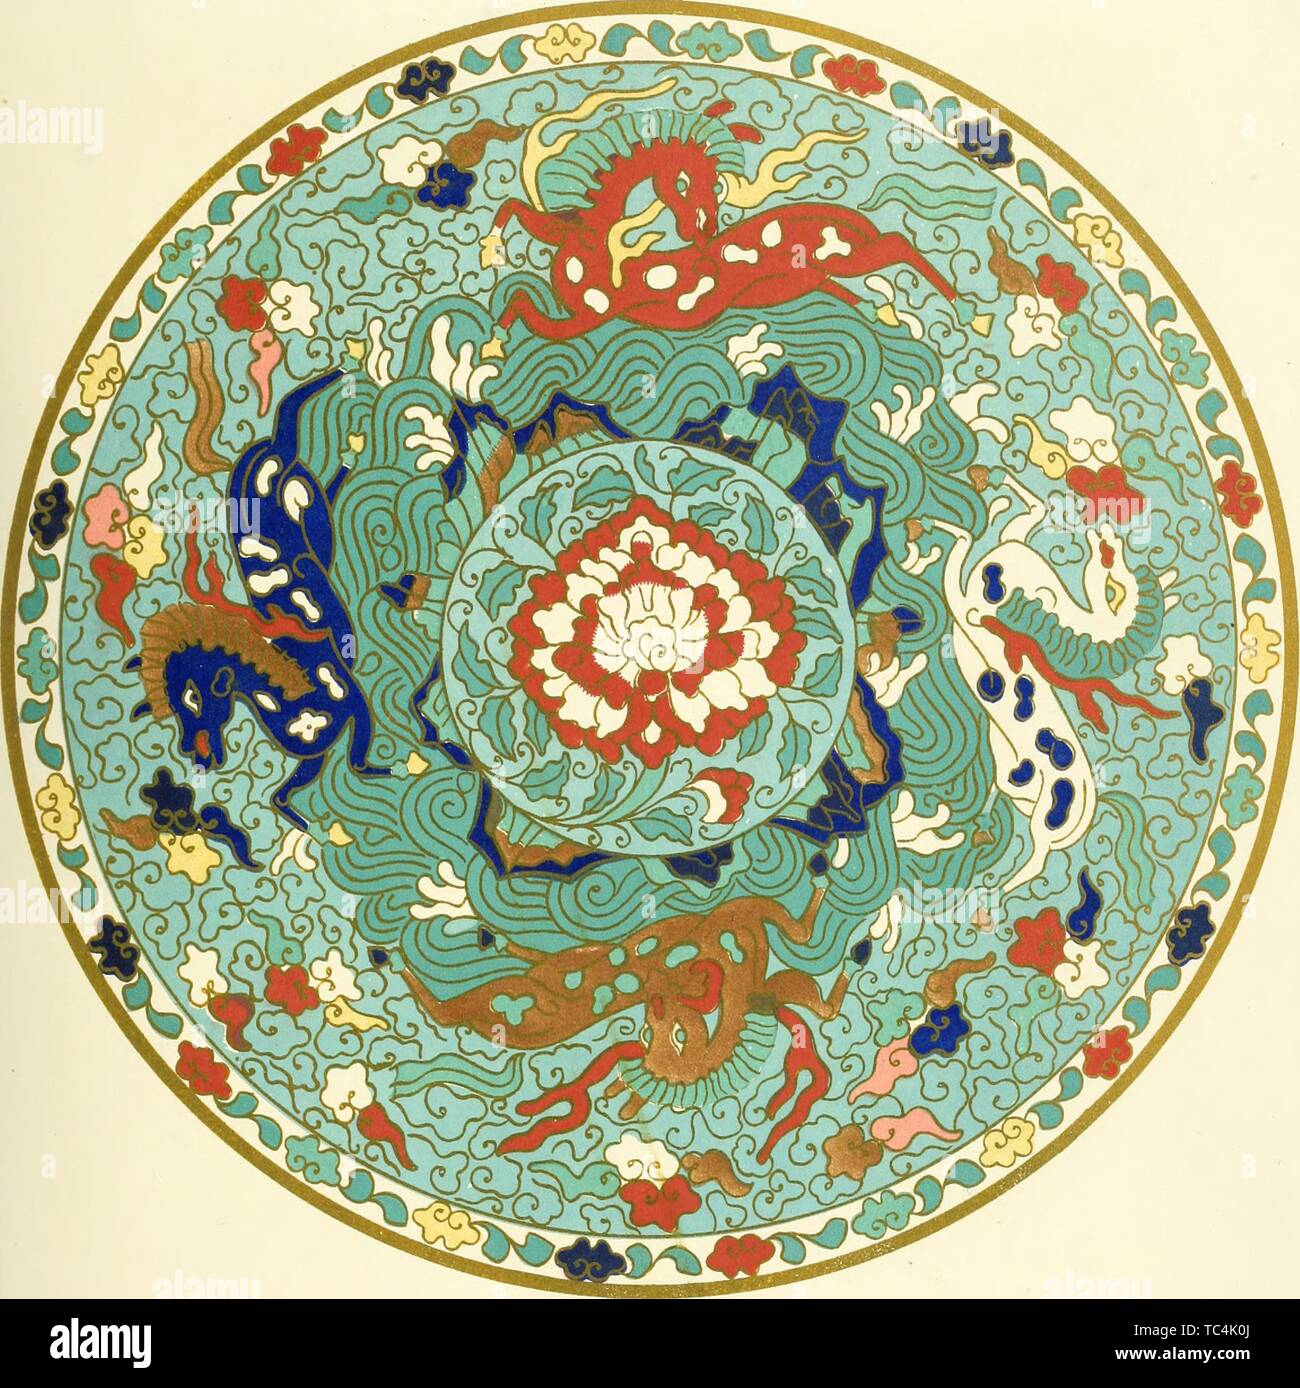 Gravur der chinesischen dekorative Kunst, aus dem Buch "Beispiele der chinesischen Ornament von Objekten im South Kensington Museum und anderen Sammlungen" von Jones Owen, 1867 ausgewählt. Mit freundlicher Genehmigung Internet Archive. () Stockfoto